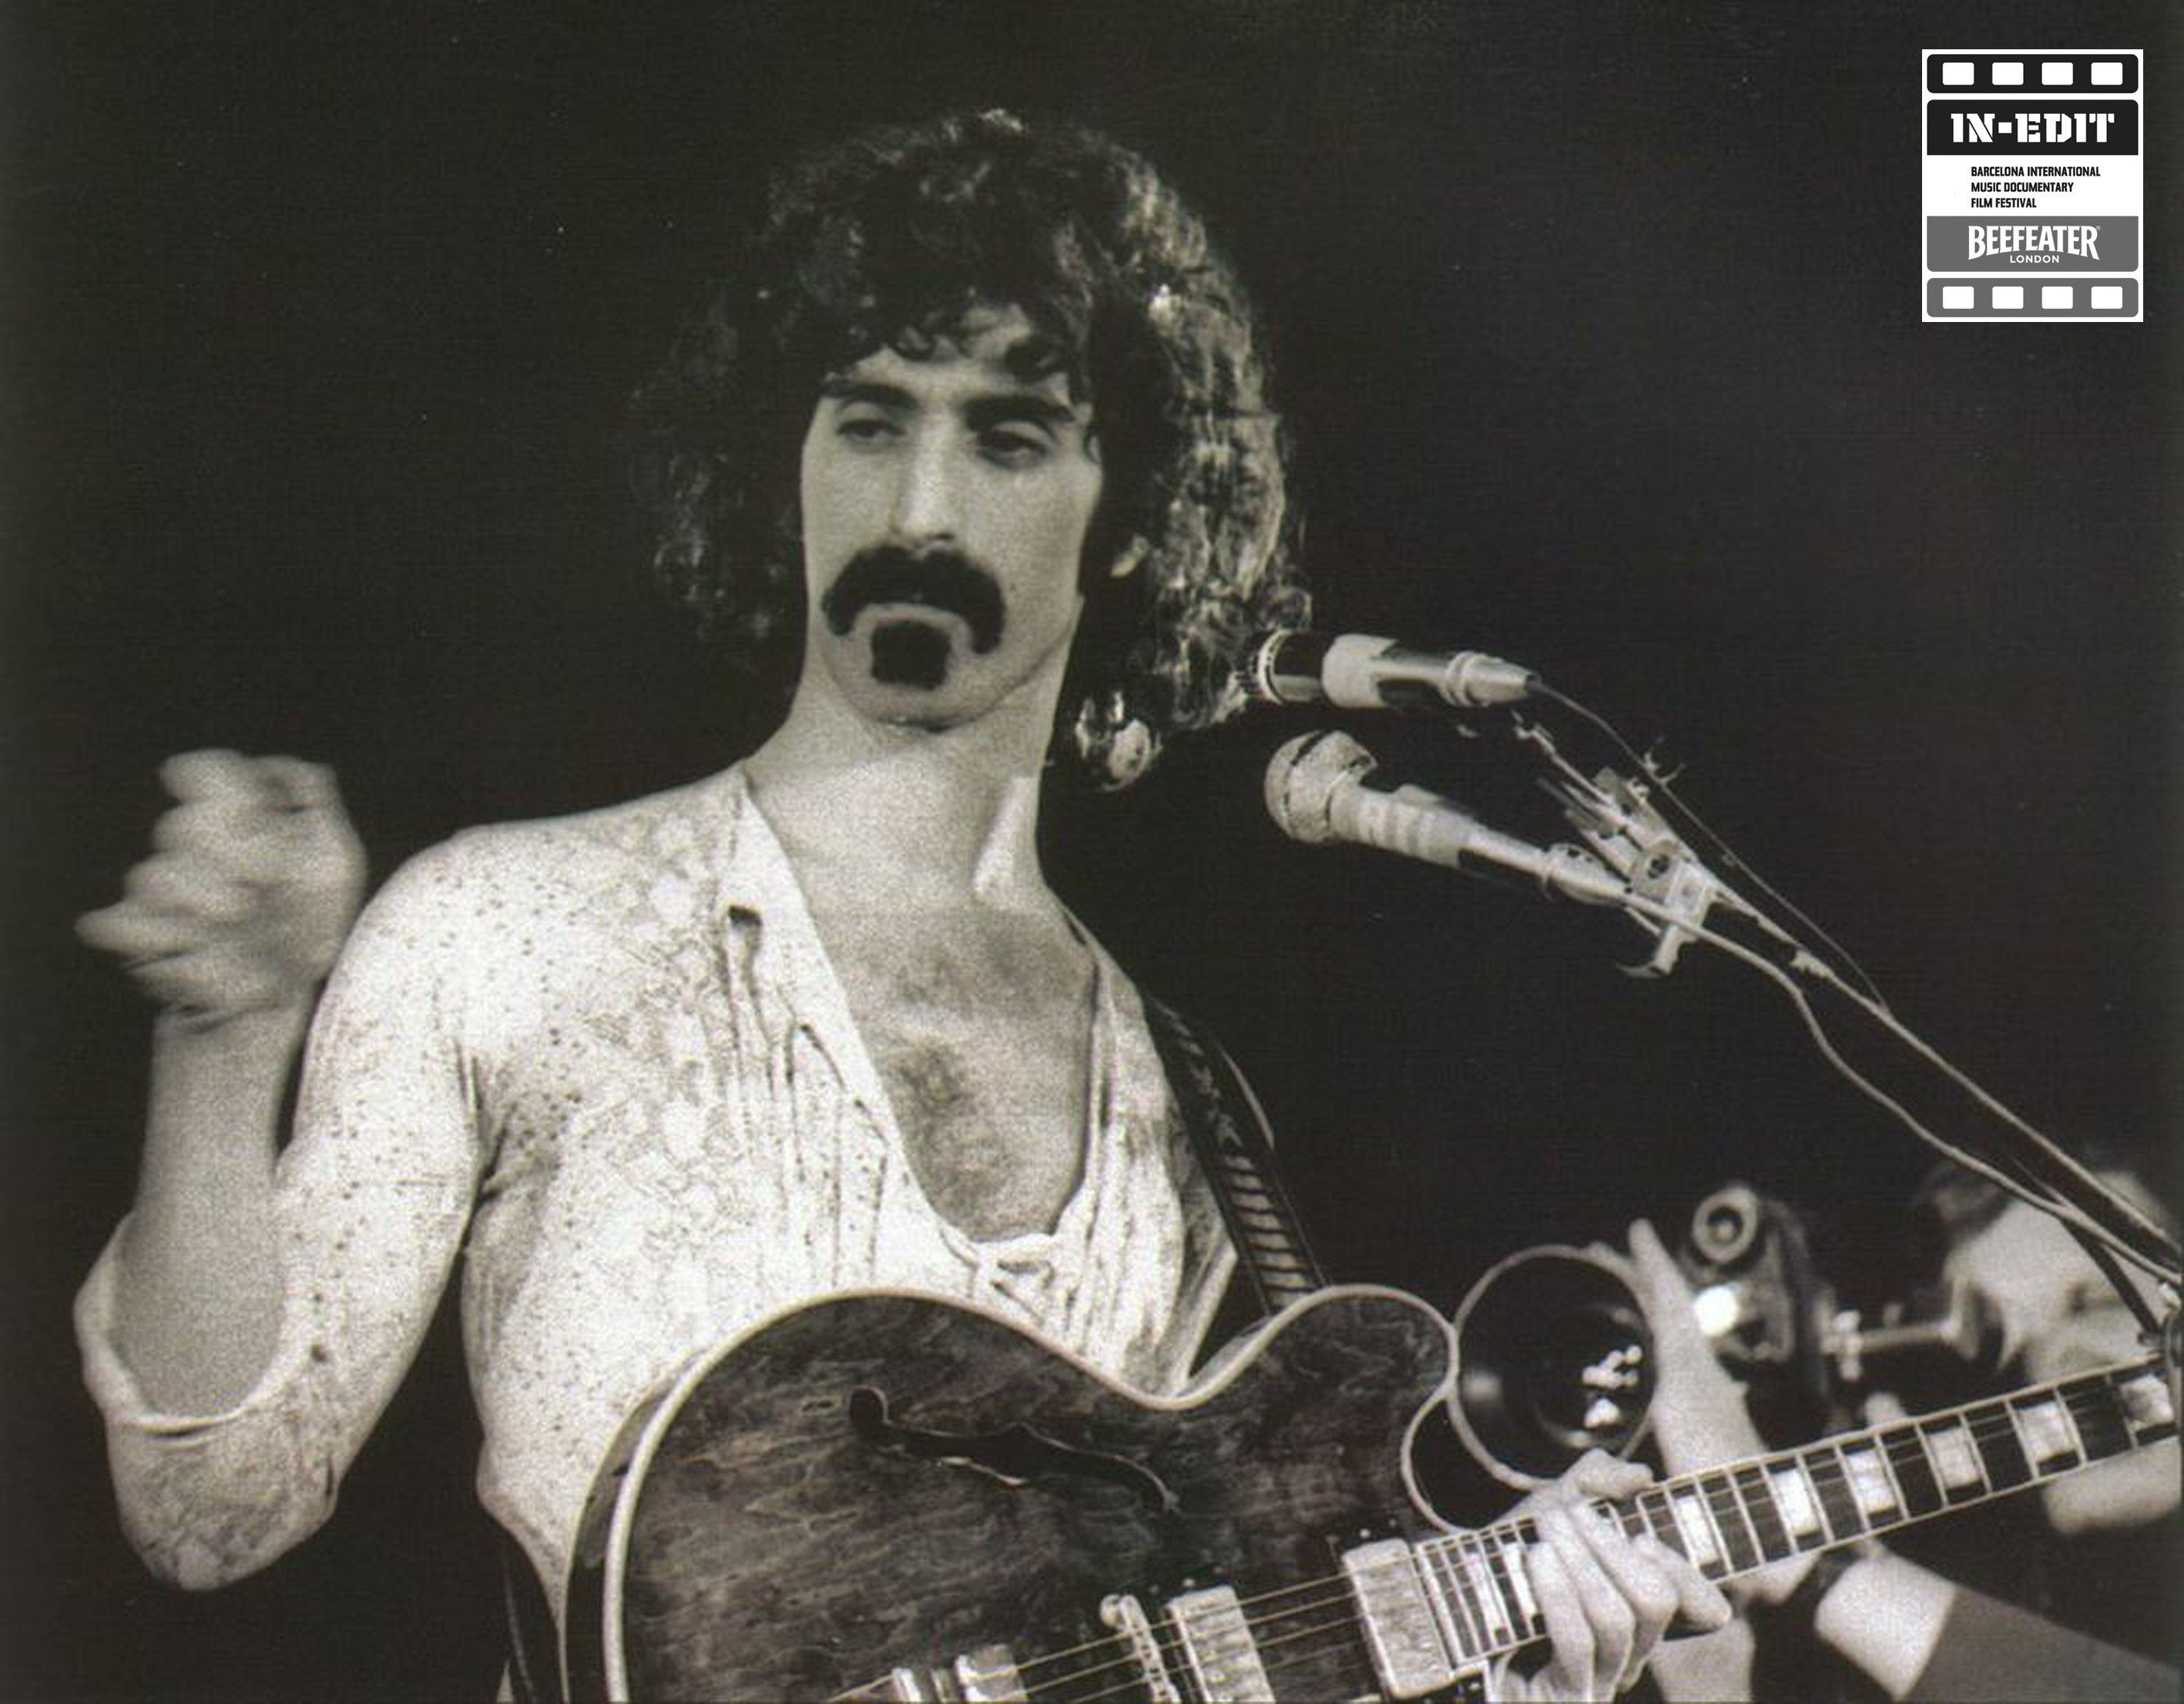 Frank Zappa In-Edit 2014